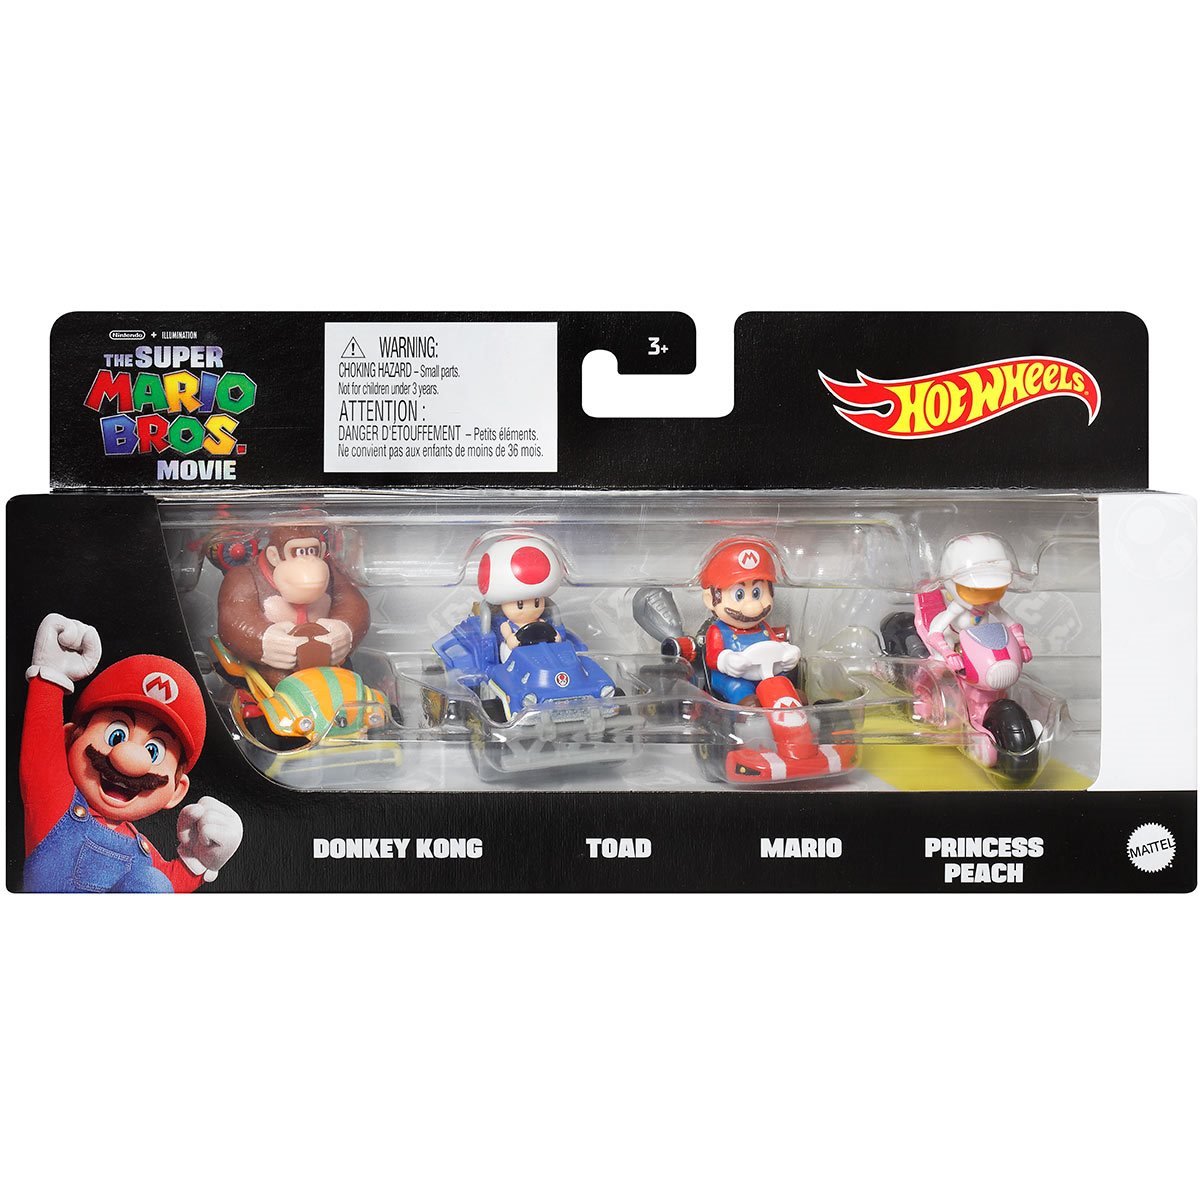 Super Mario Bros. mostra Kart, Donkey Kong, Princesa Peach e mais